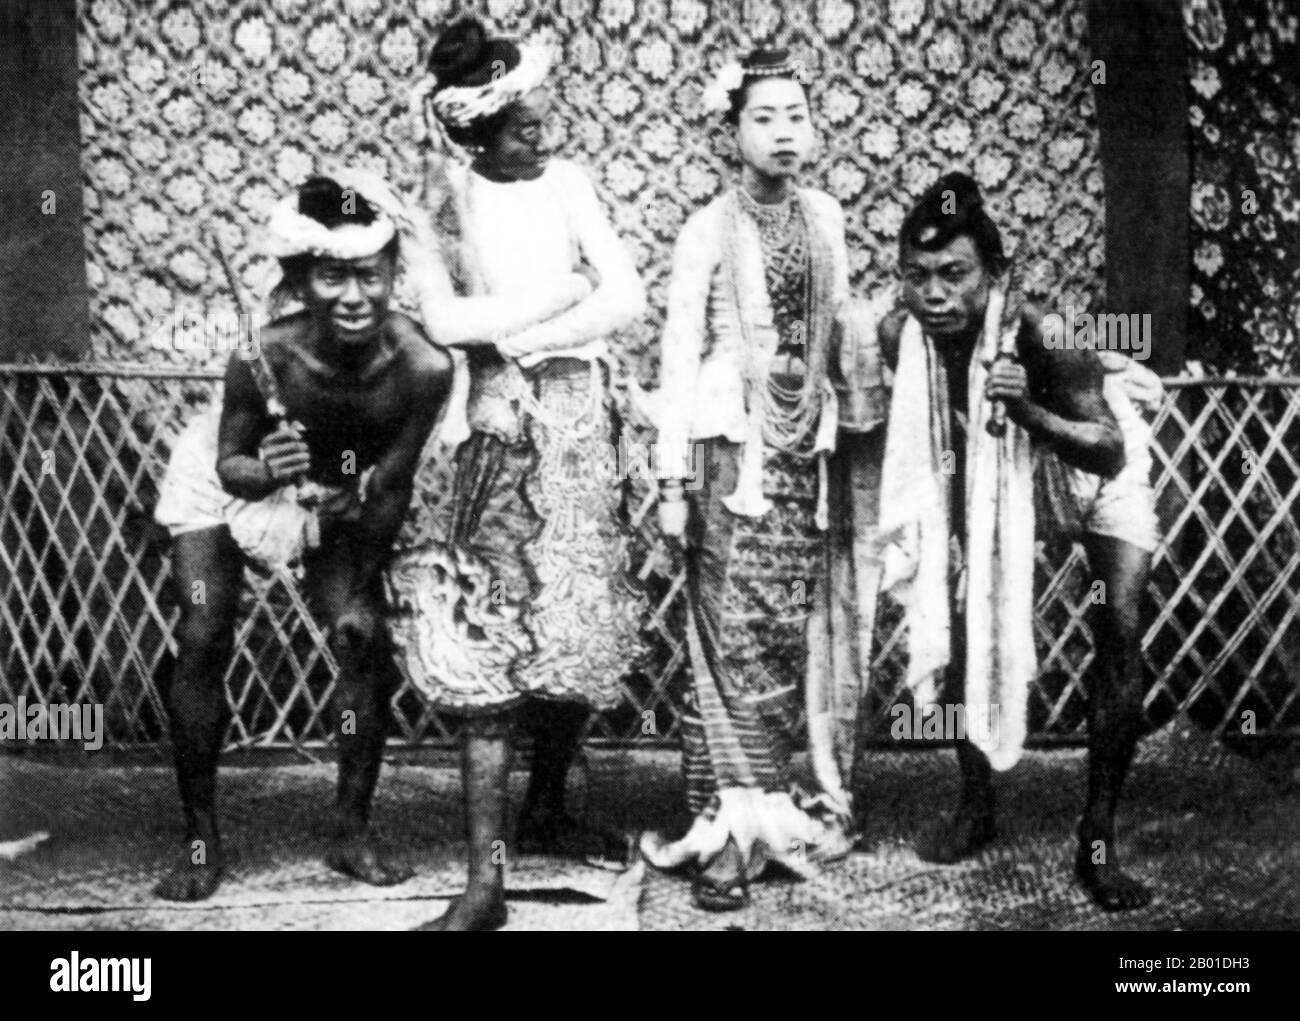 Burma: Attori teatrali, c. 1892-1896. La conquista britannica della Birmania è iniziata nel 1824 in risposta ad un tentativo birmano di invadere l'India. Nel 1886, e dopo altre due guerre, la Gran Bretagna aveva incorporato l'intero paese nel Raj britannico. Per stimolare il commercio e facilitare i cambiamenti, gli inglesi hanno introdotto indiani e cinesi, che hanno rapidamente spostato i birmani nelle aree urbane. A oggi Rangoon e Mandalay hanno grandi popolazioni etniche indiane. Sono state costruite ferrovie e scuole, così come un gran numero di carceri, tra cui la famigerata prigione di Insein, allora come oggi utilizzata per i prigionieri politici. Foto Stock